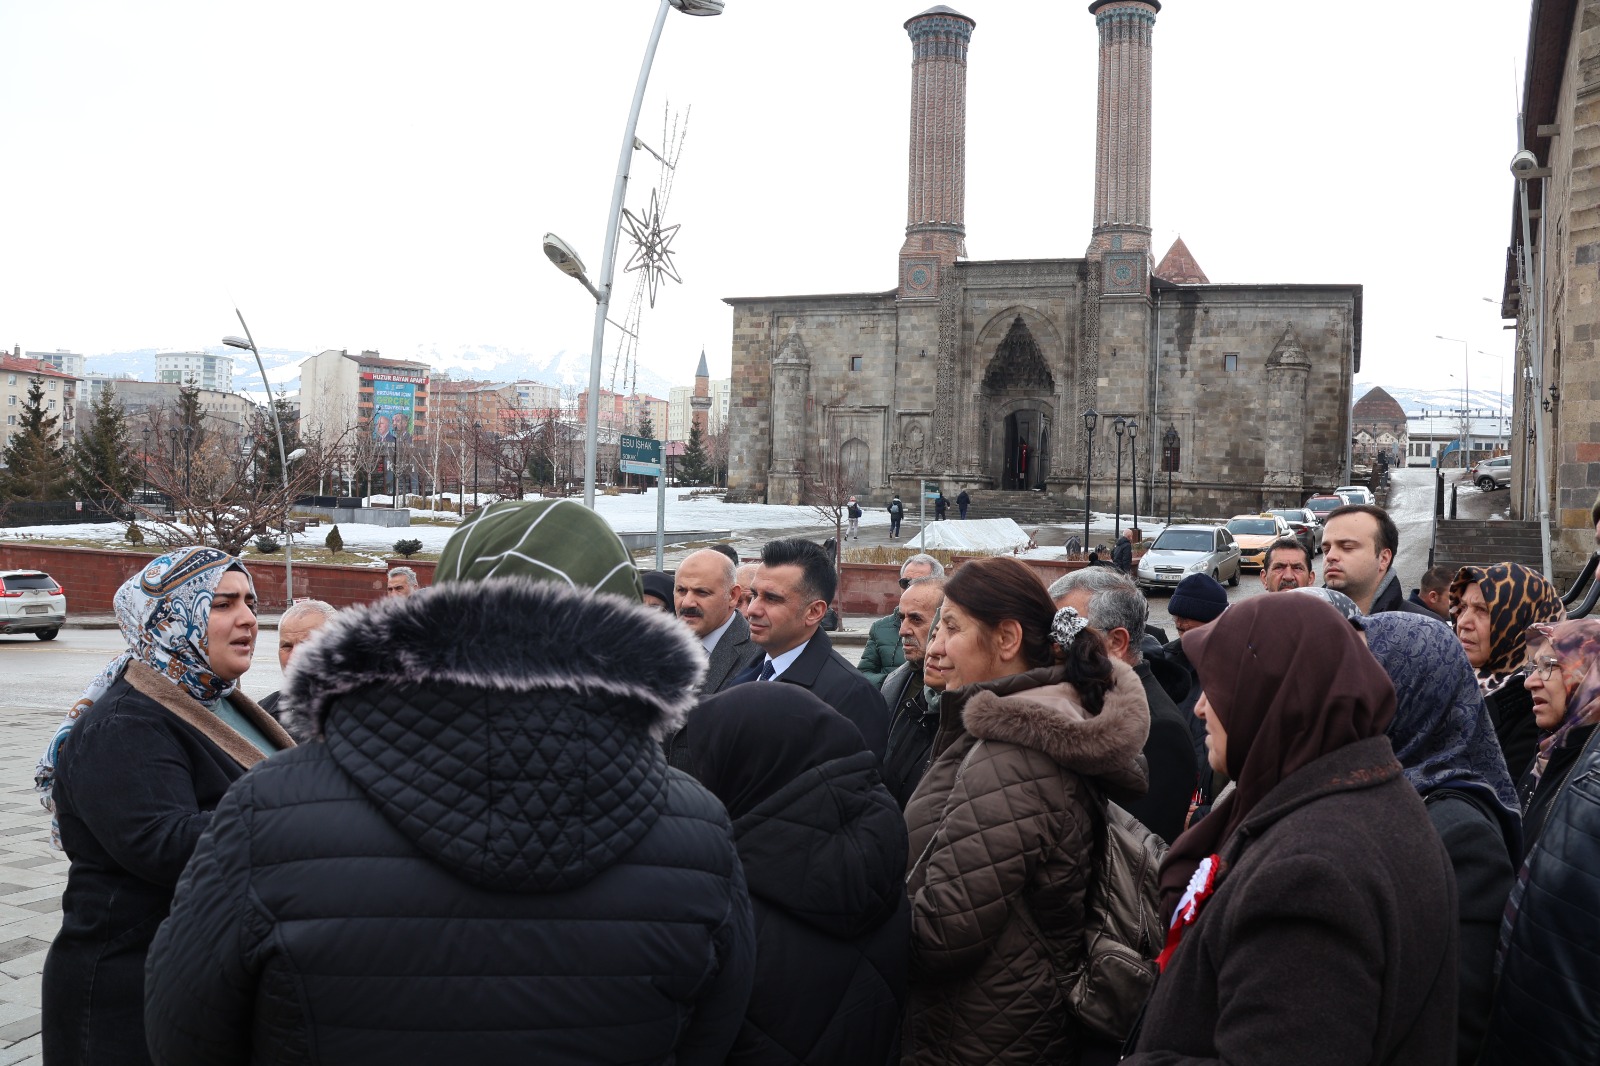 Erzurum'un sembolü olarak kabul edilen Çift Minareli Medrese'yi ziyaret ettik.